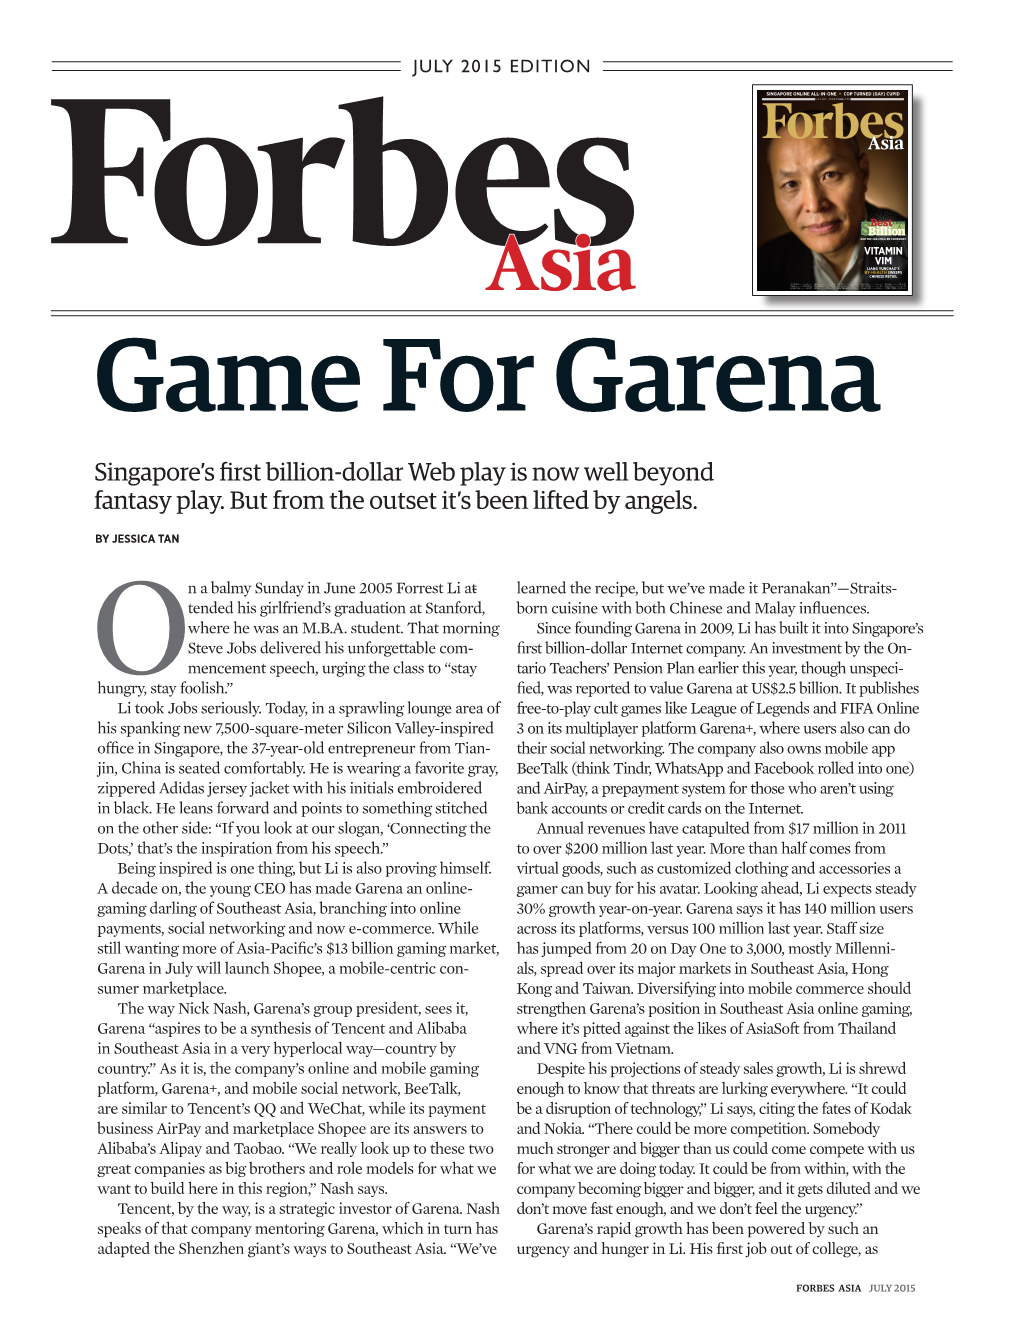 Game for Garena